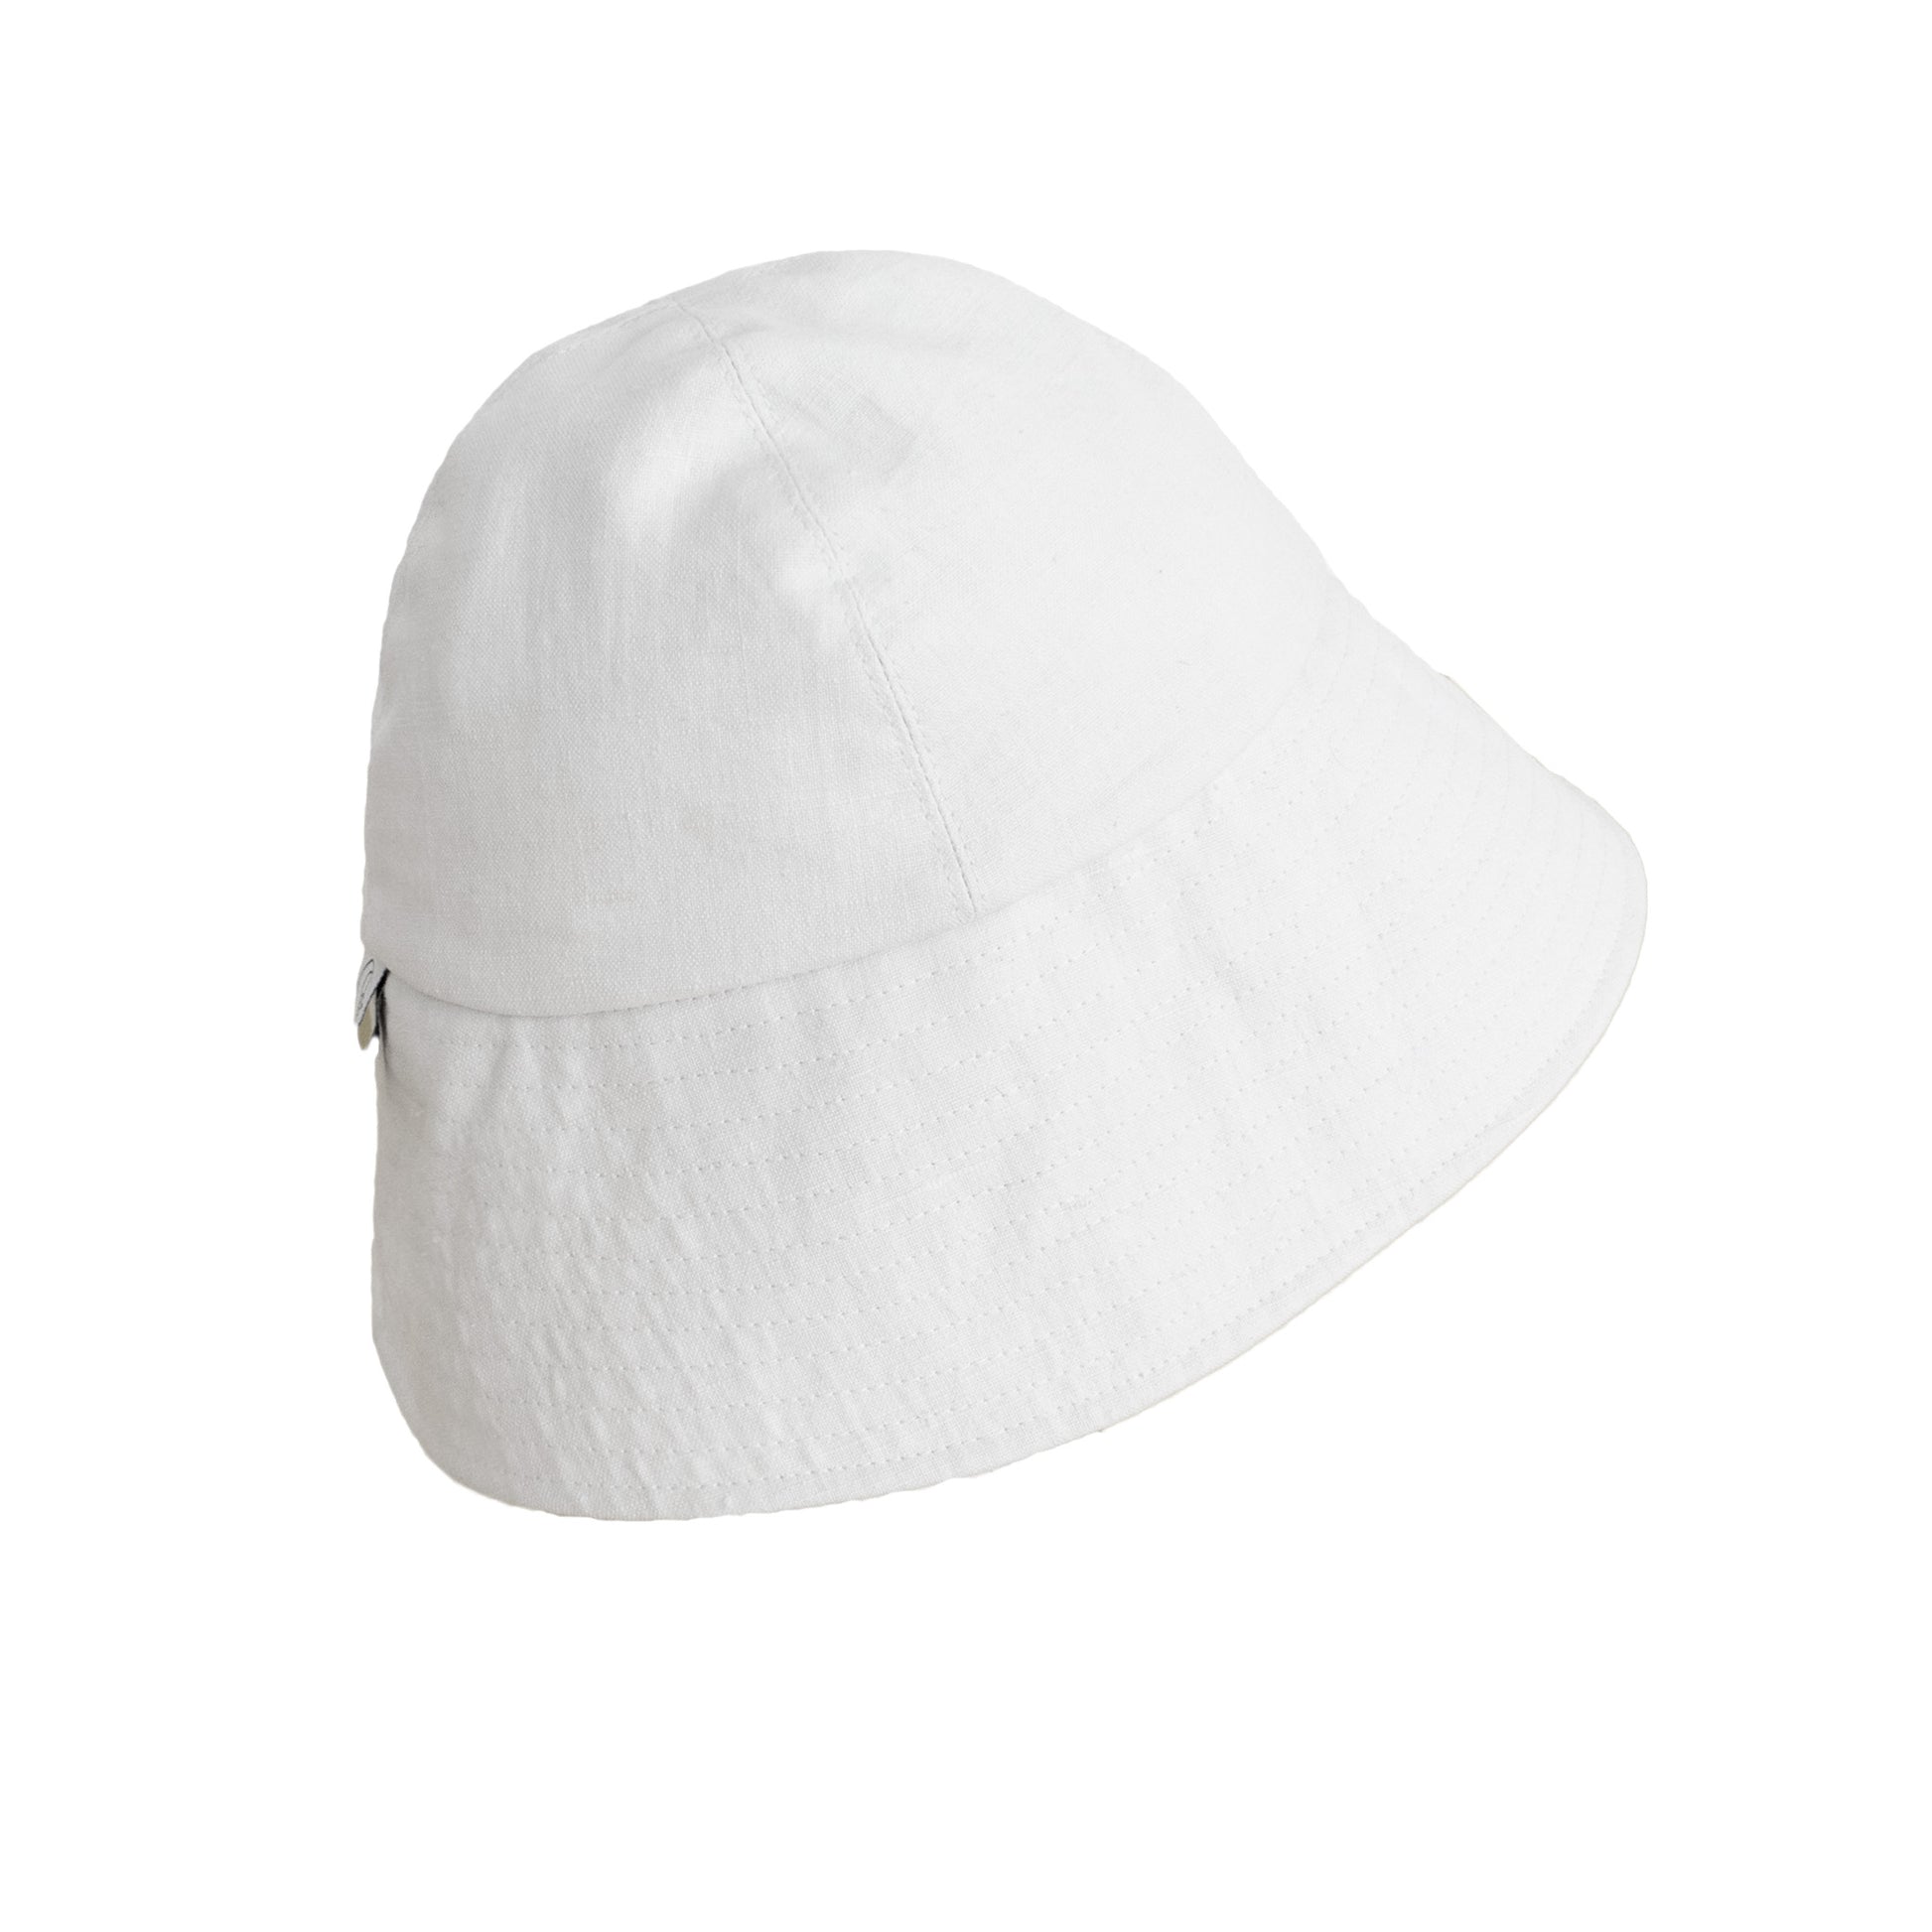 Round Bucket Hat in white linen - Uriel Studio